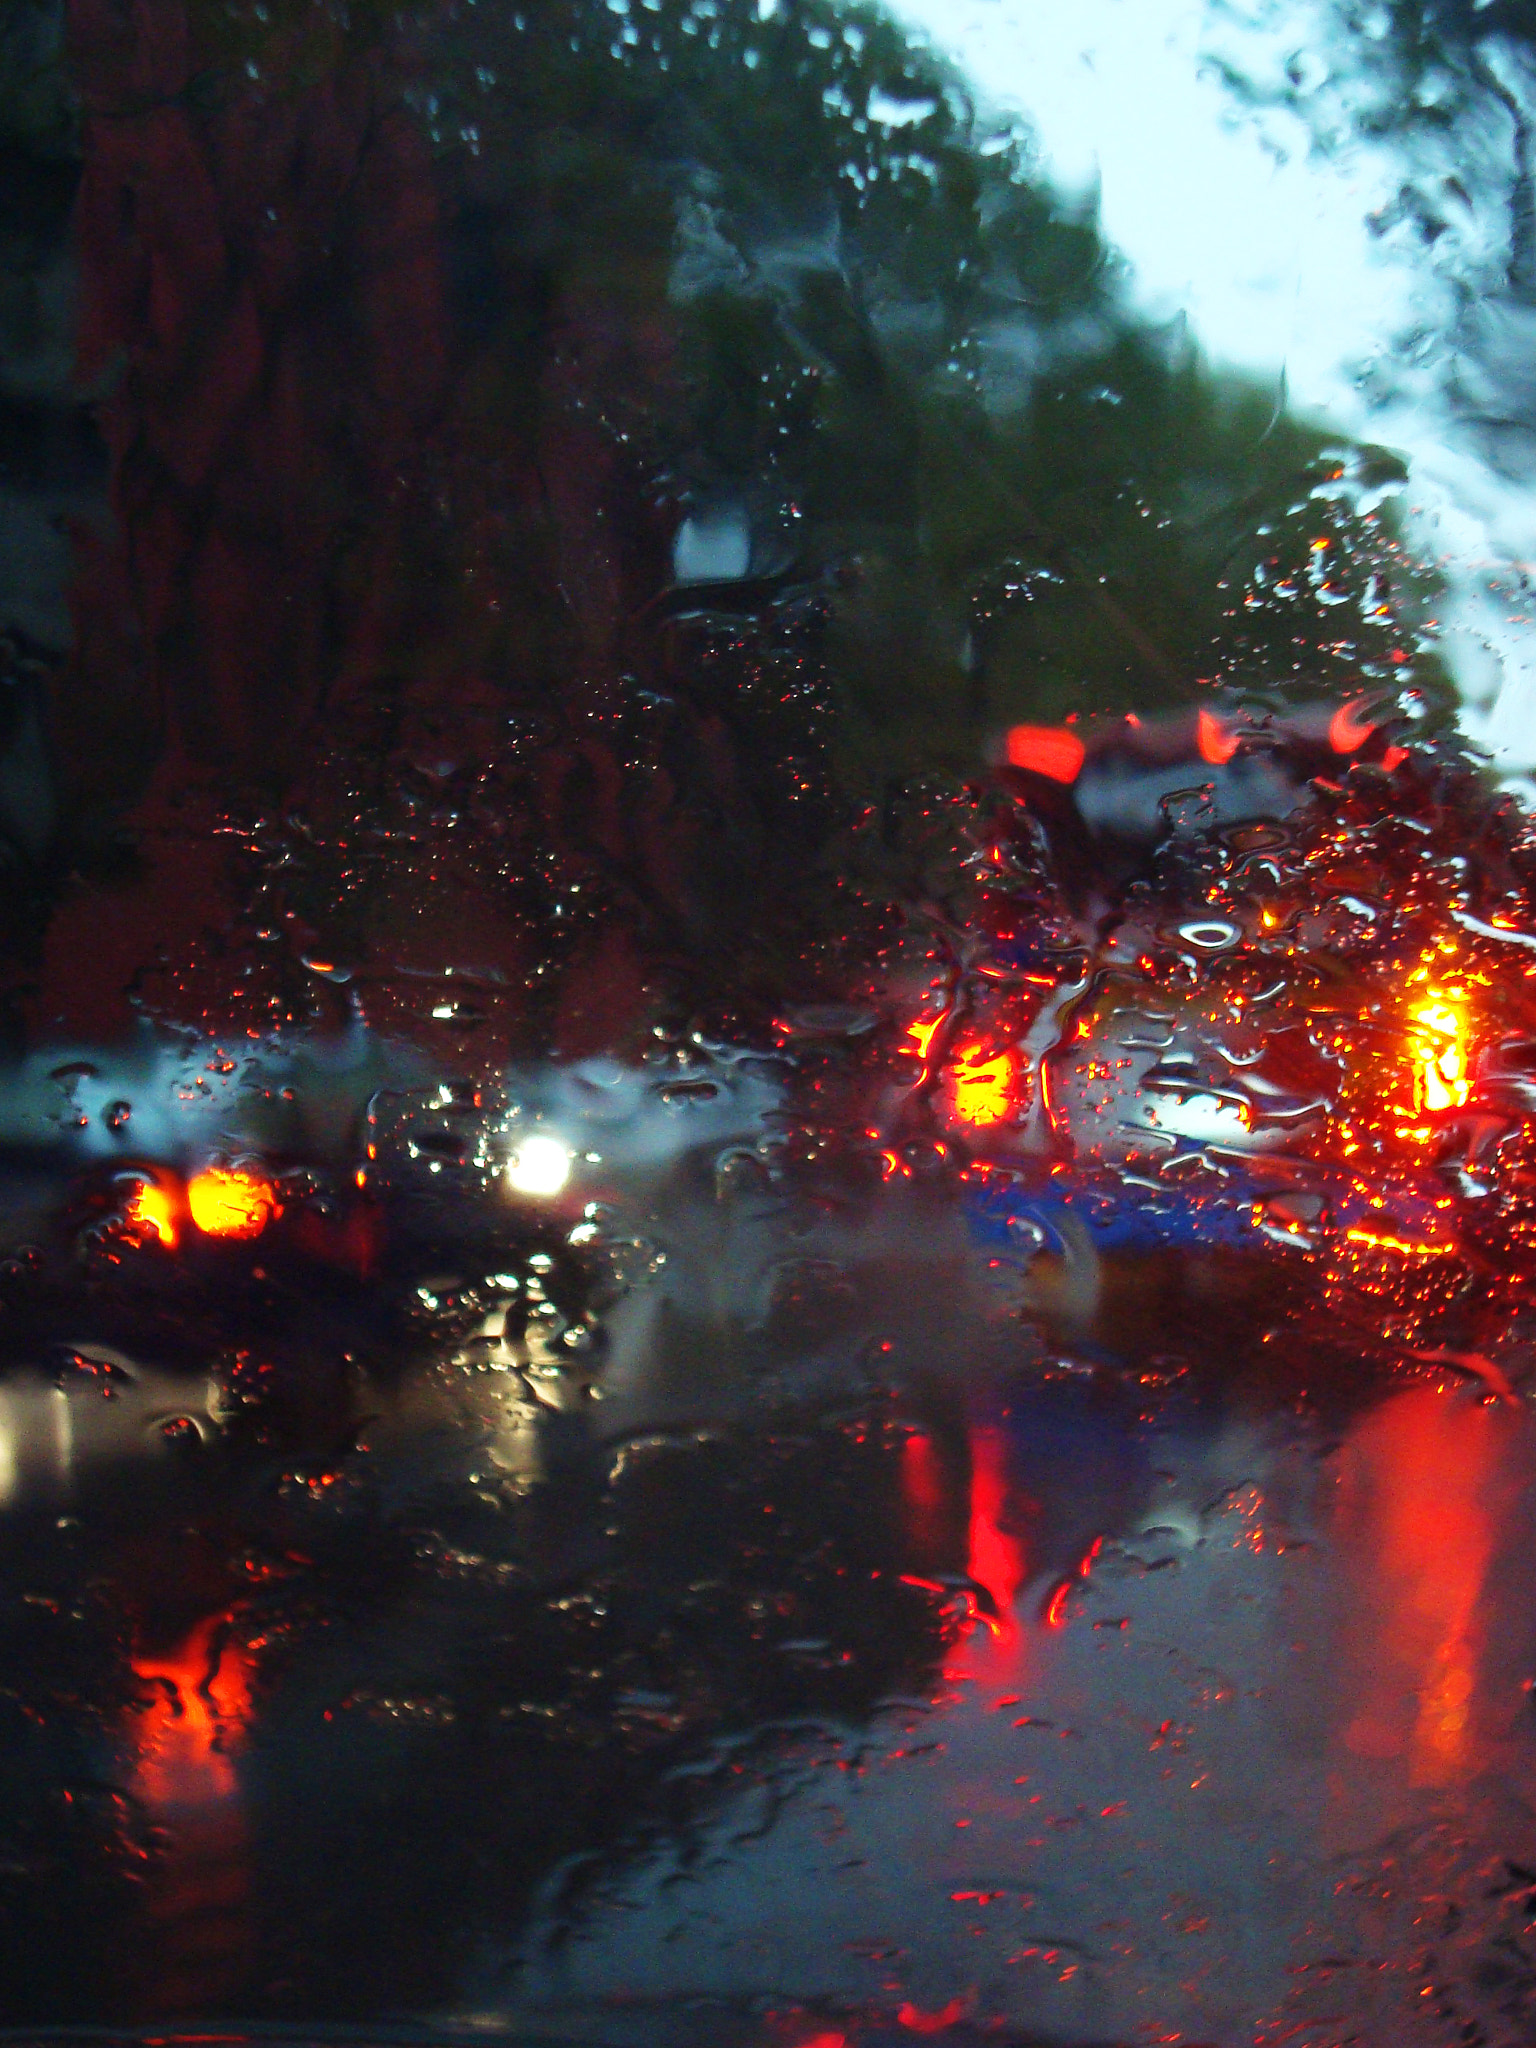 Sony Cyber-shot DSC-W120 sample photo. Alguna calle, algún día, cuando la lluvia interminable... photography